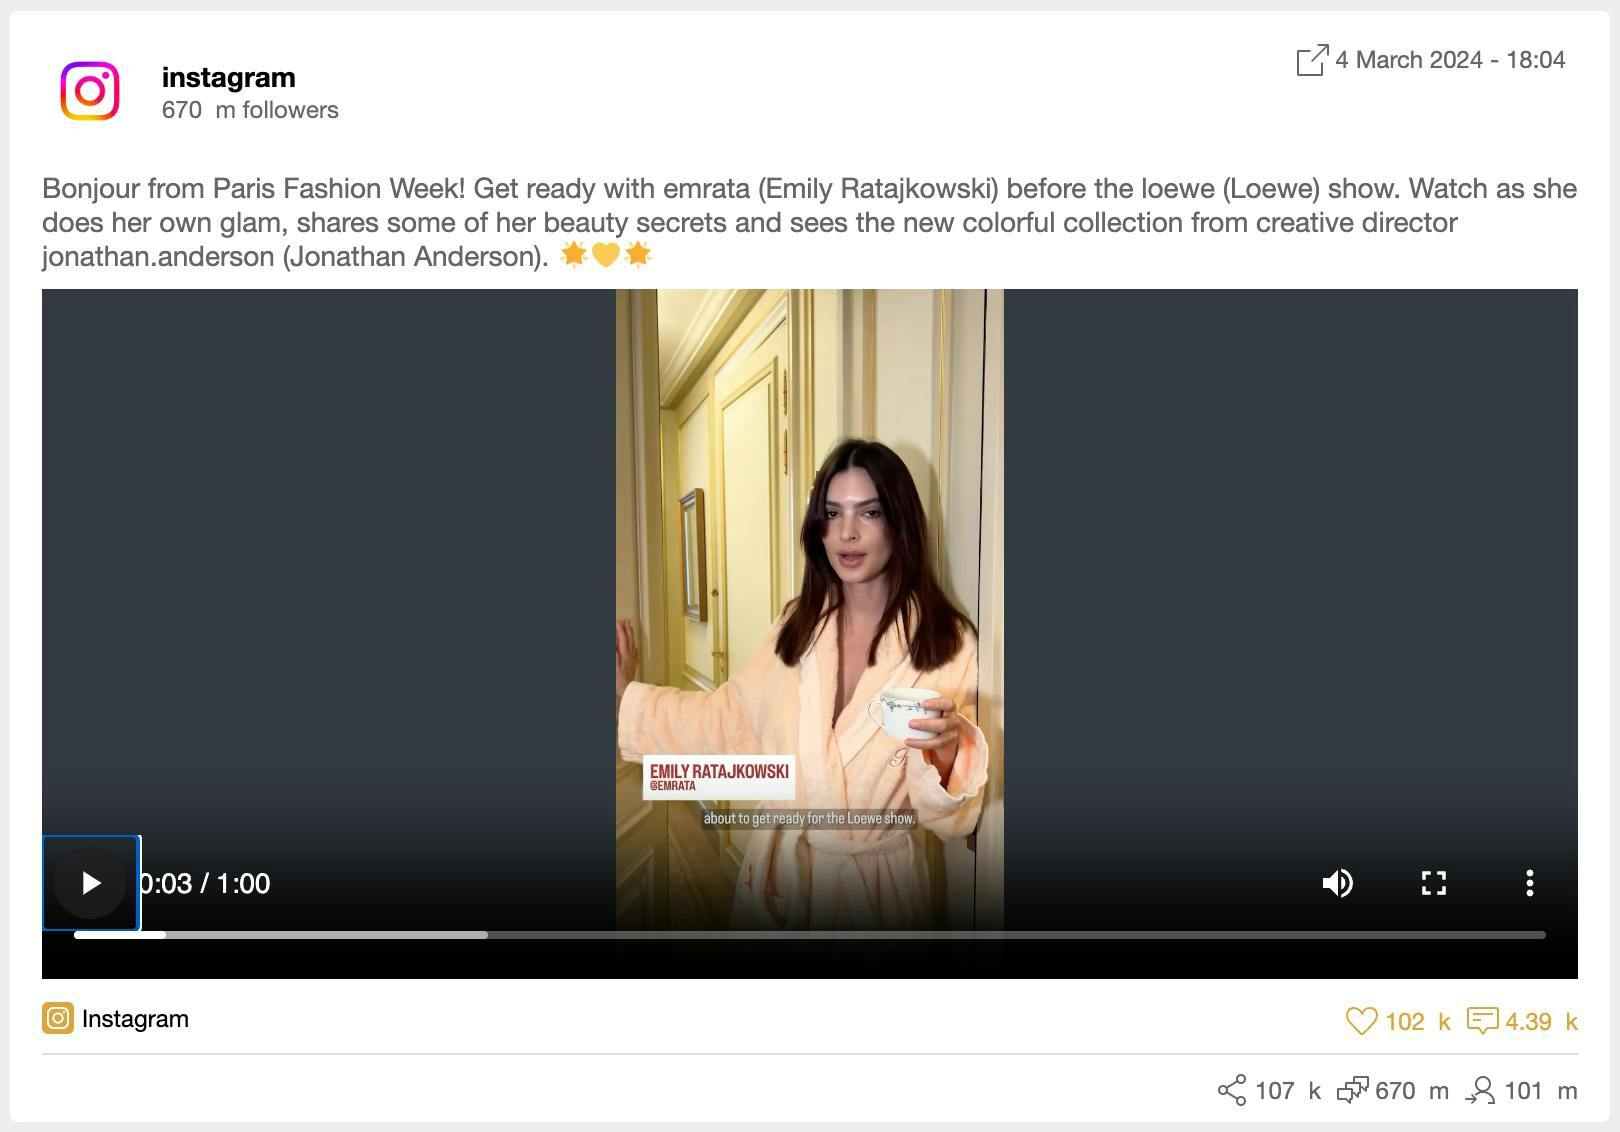 Capture d'écran du post Instragram "get ready with me" de Emily Ratajkowski pour Loewe, tel qu'il apparaît sur la plateforme de consumer intelligence de Meltwater.